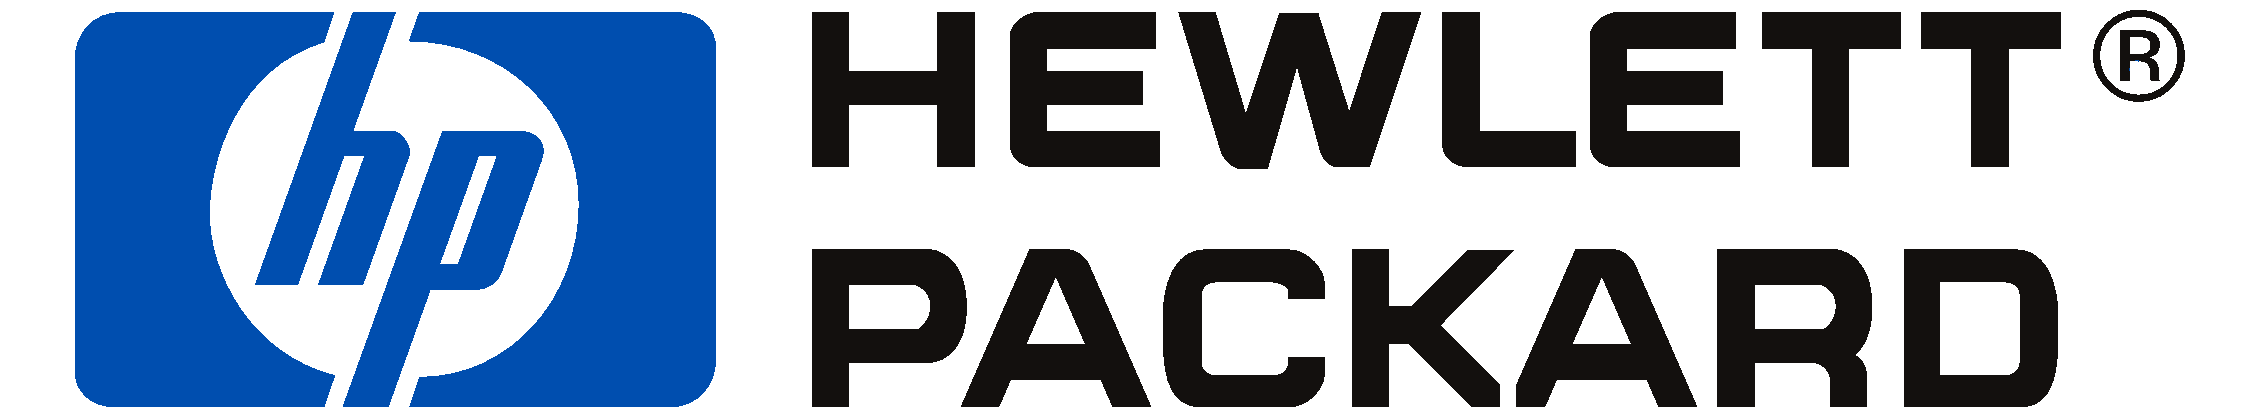 Hewlett Packard Inc Logo - Hewlett packard Logos